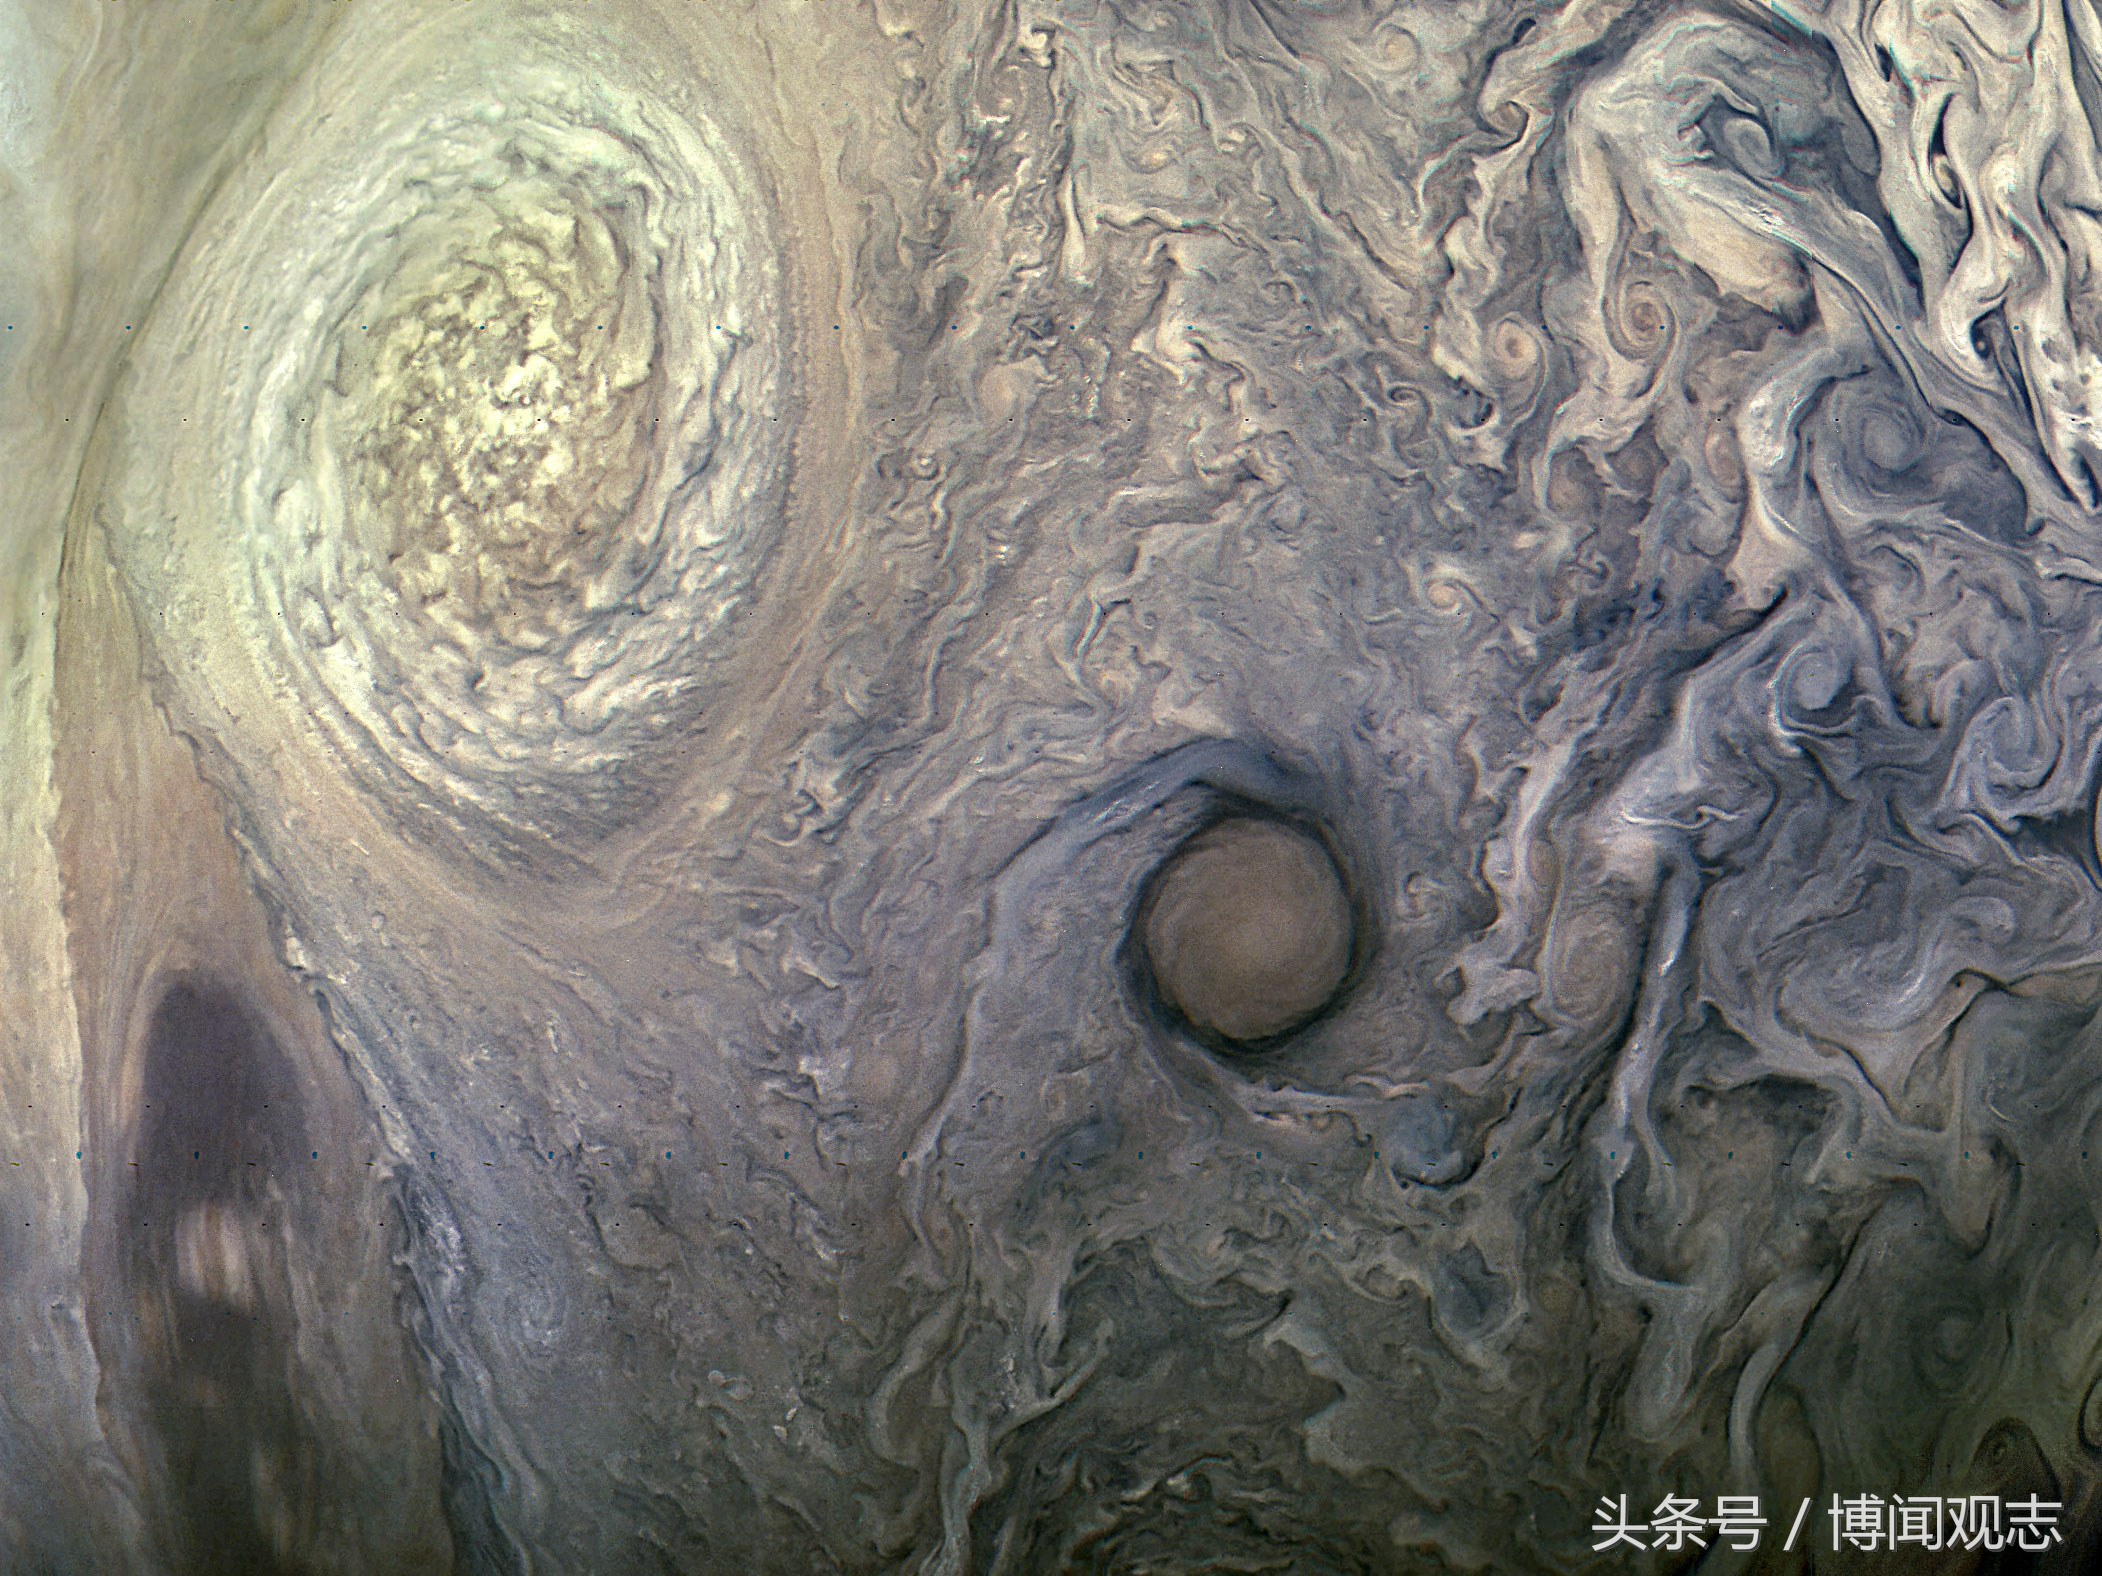 木星恐怖照片耀斑图片